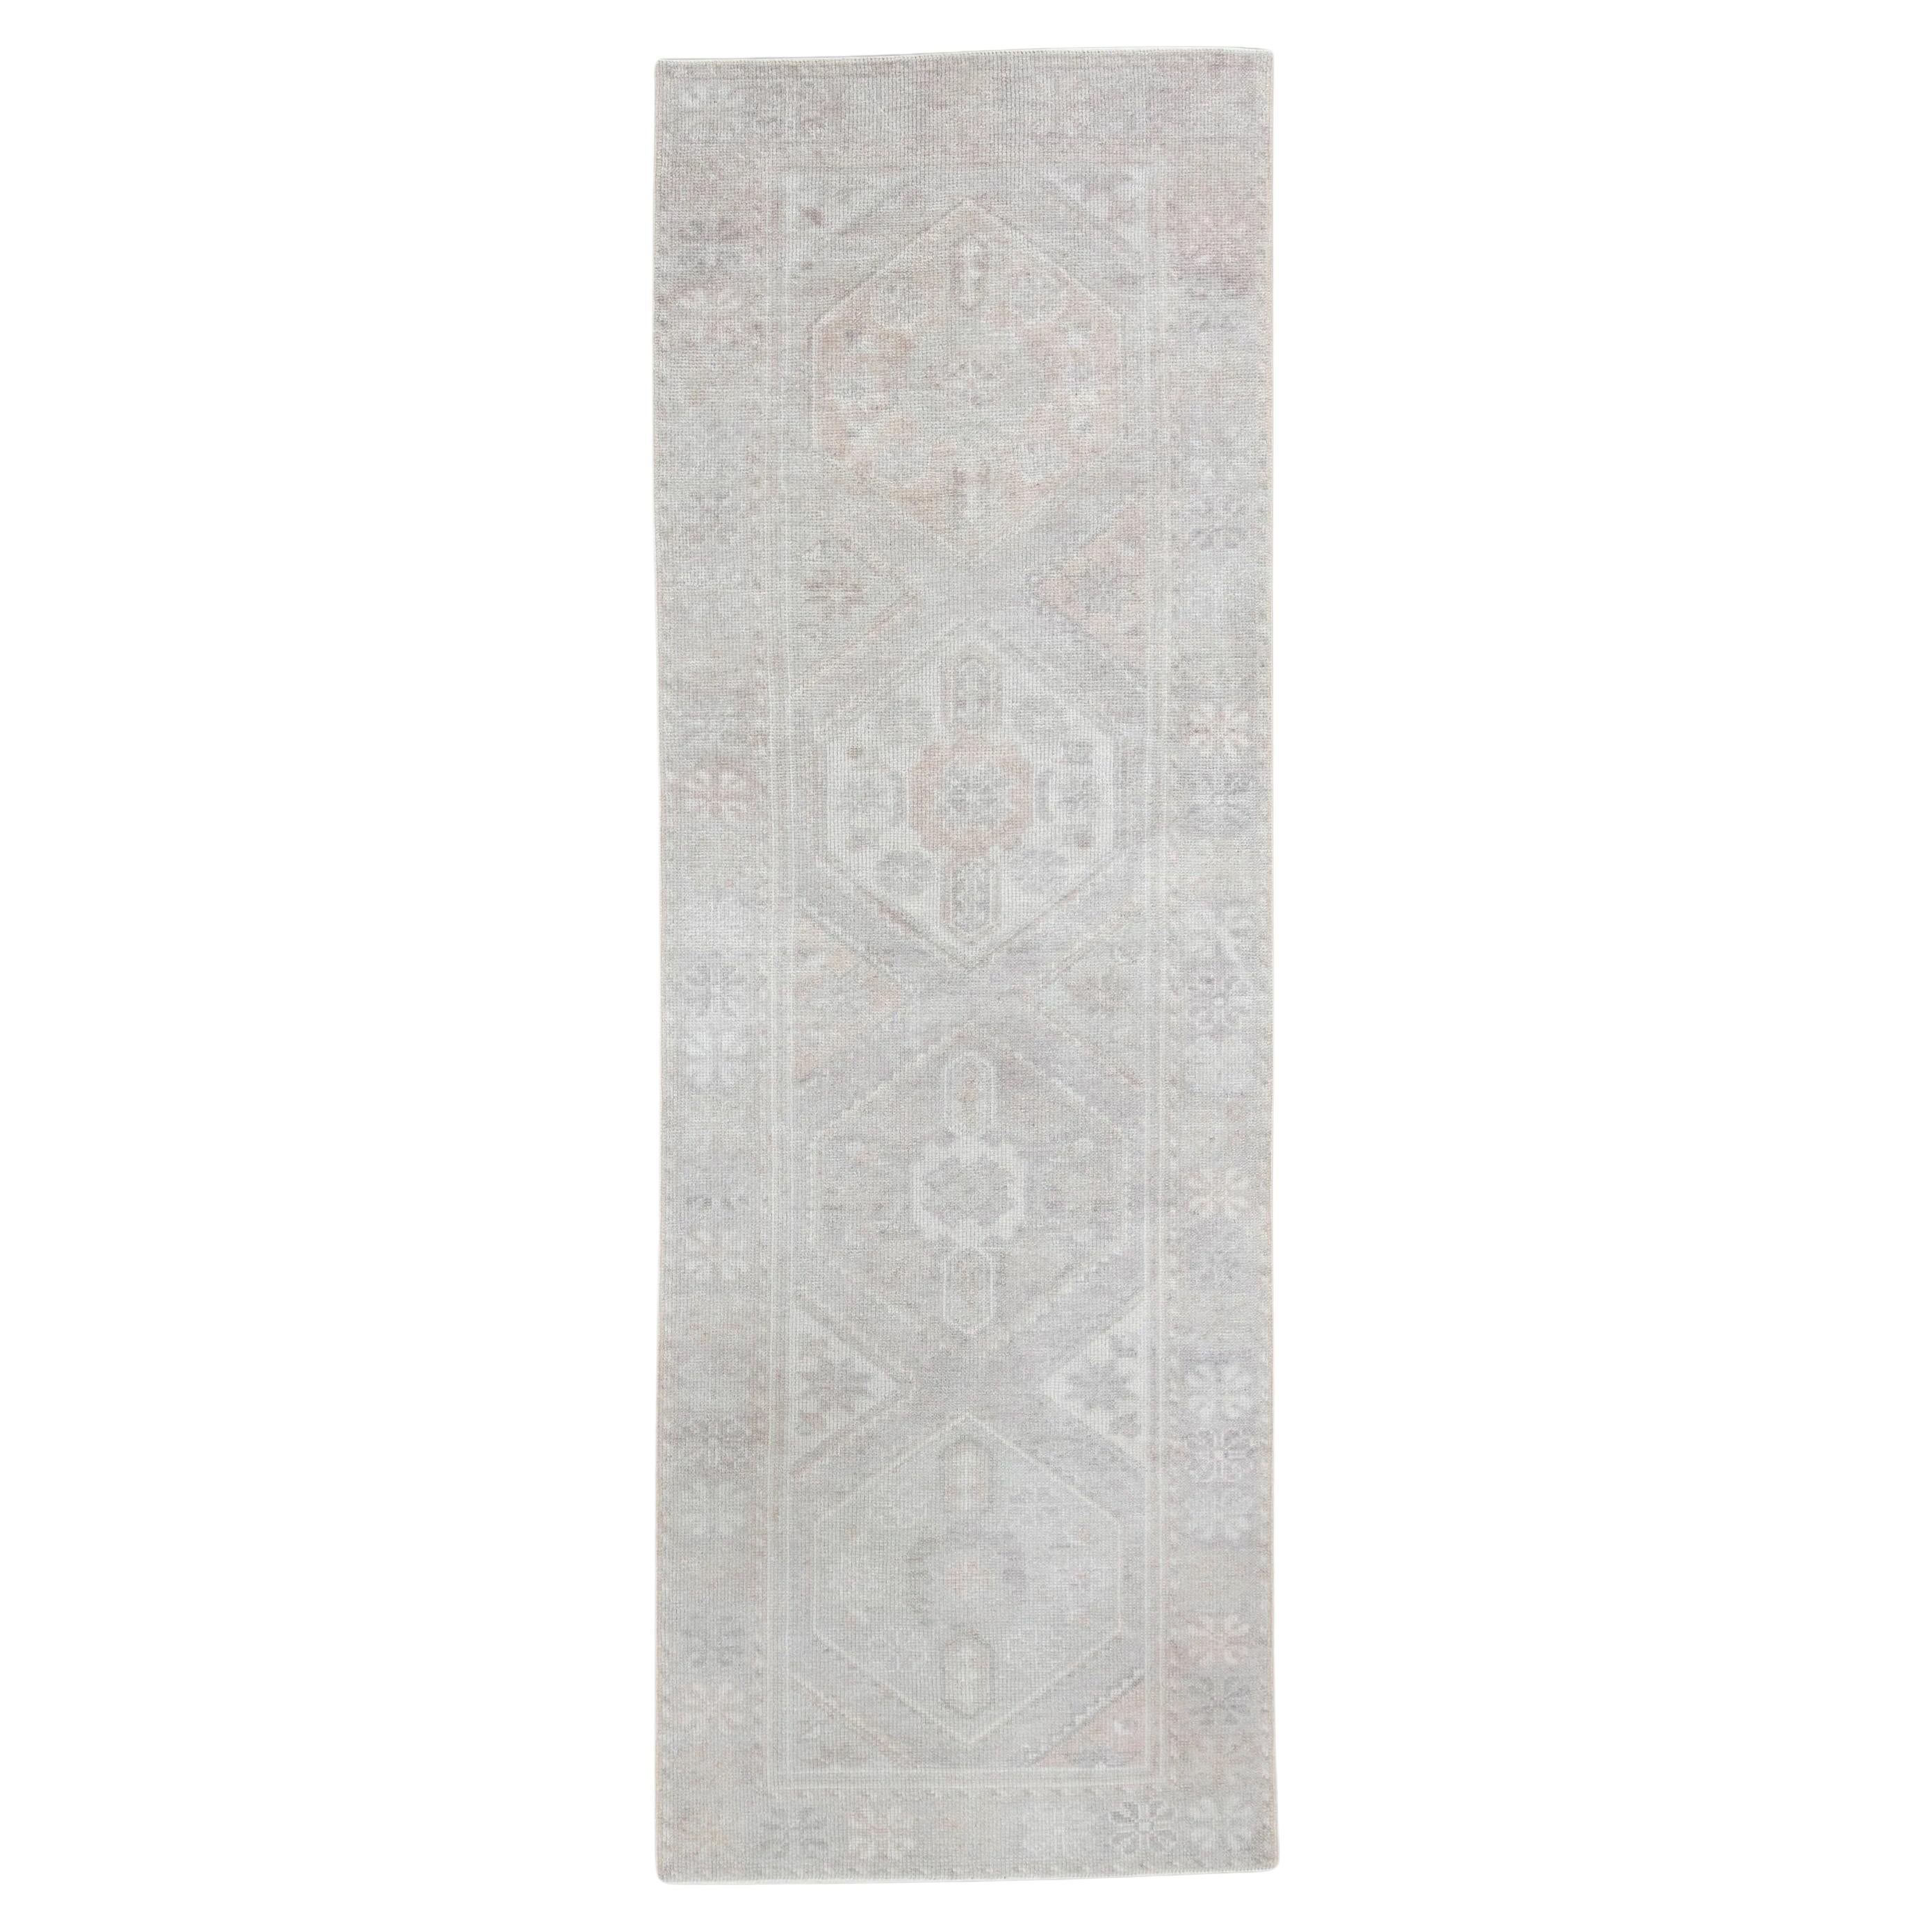 Türkischer Oushak-Teppich aus Wolle mit rosa Blumenmuster, handgewebt, 2'10" x 8'9"